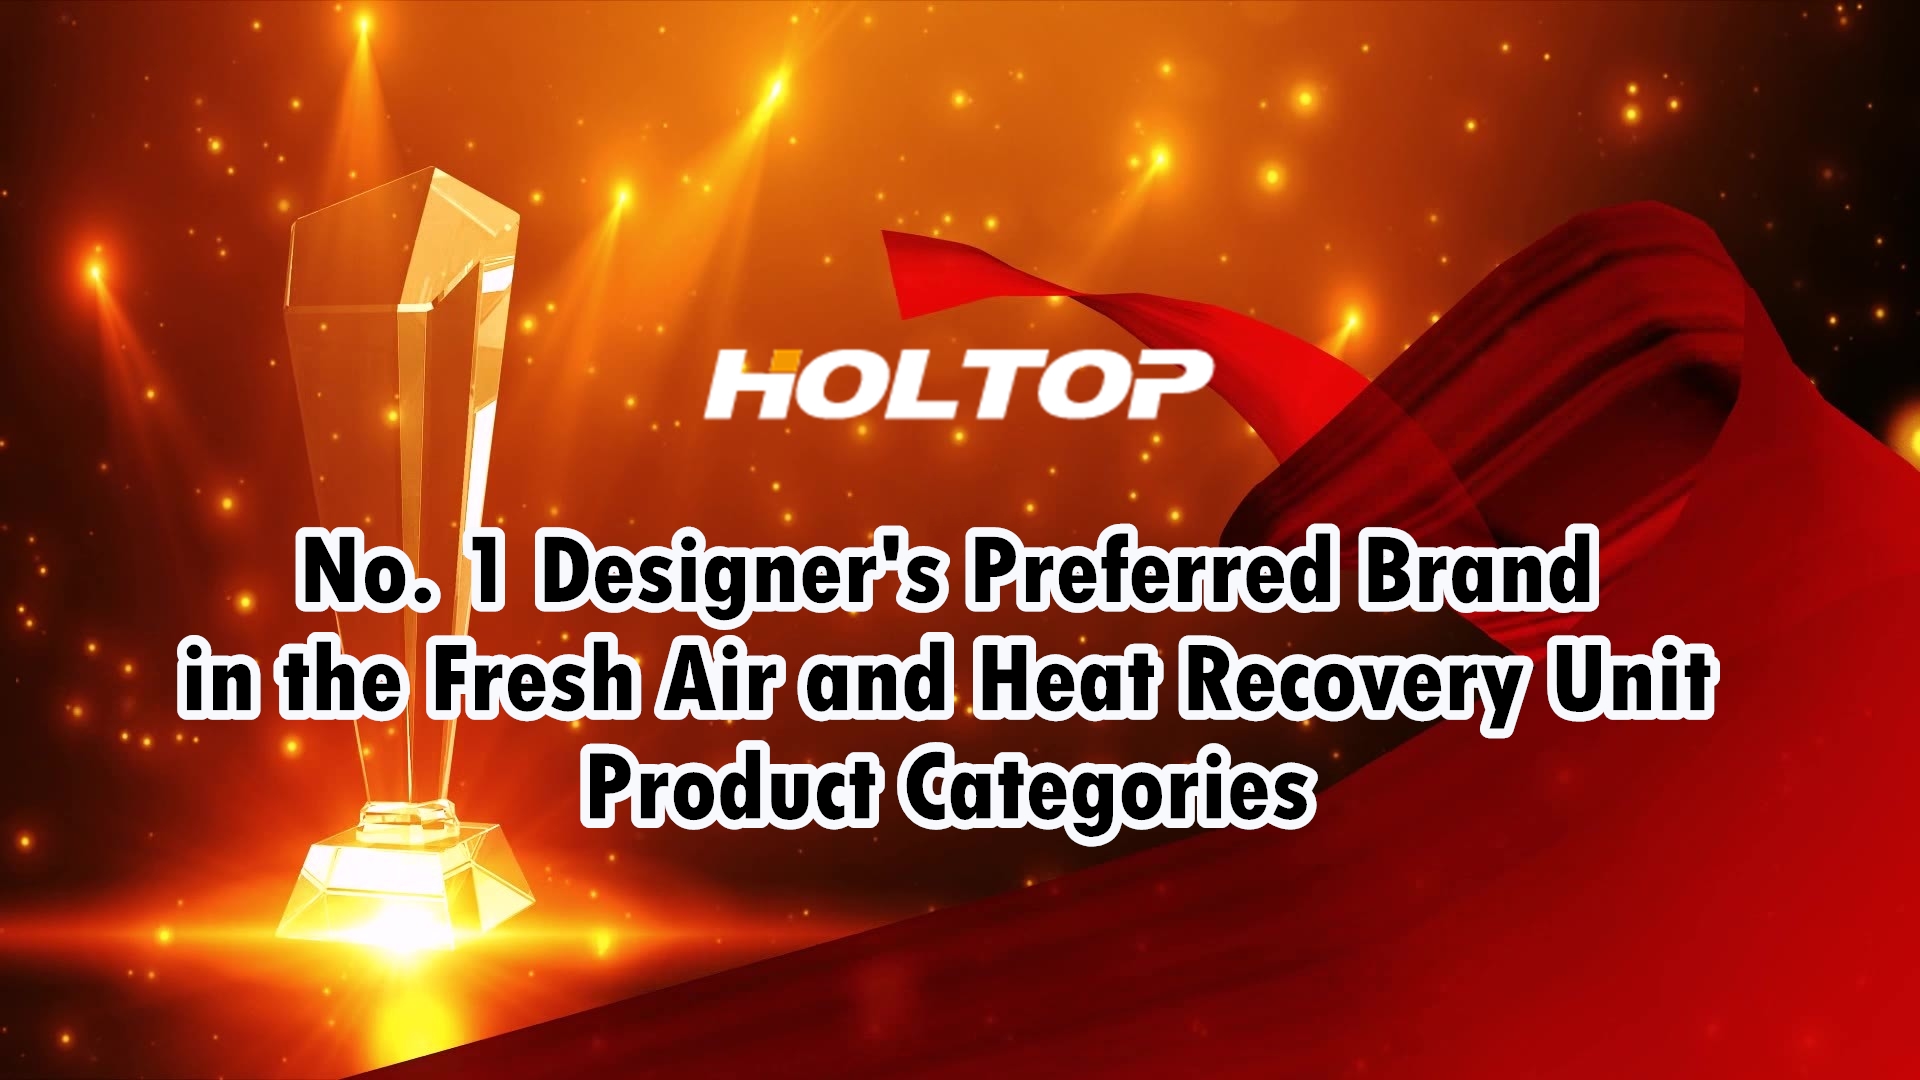 HOLTOP je preferovanou značkou designérů č. 1 v produktových kategoriích jednotek pro čerstvý vzduch a rekuperaci tepla na čínském trhu